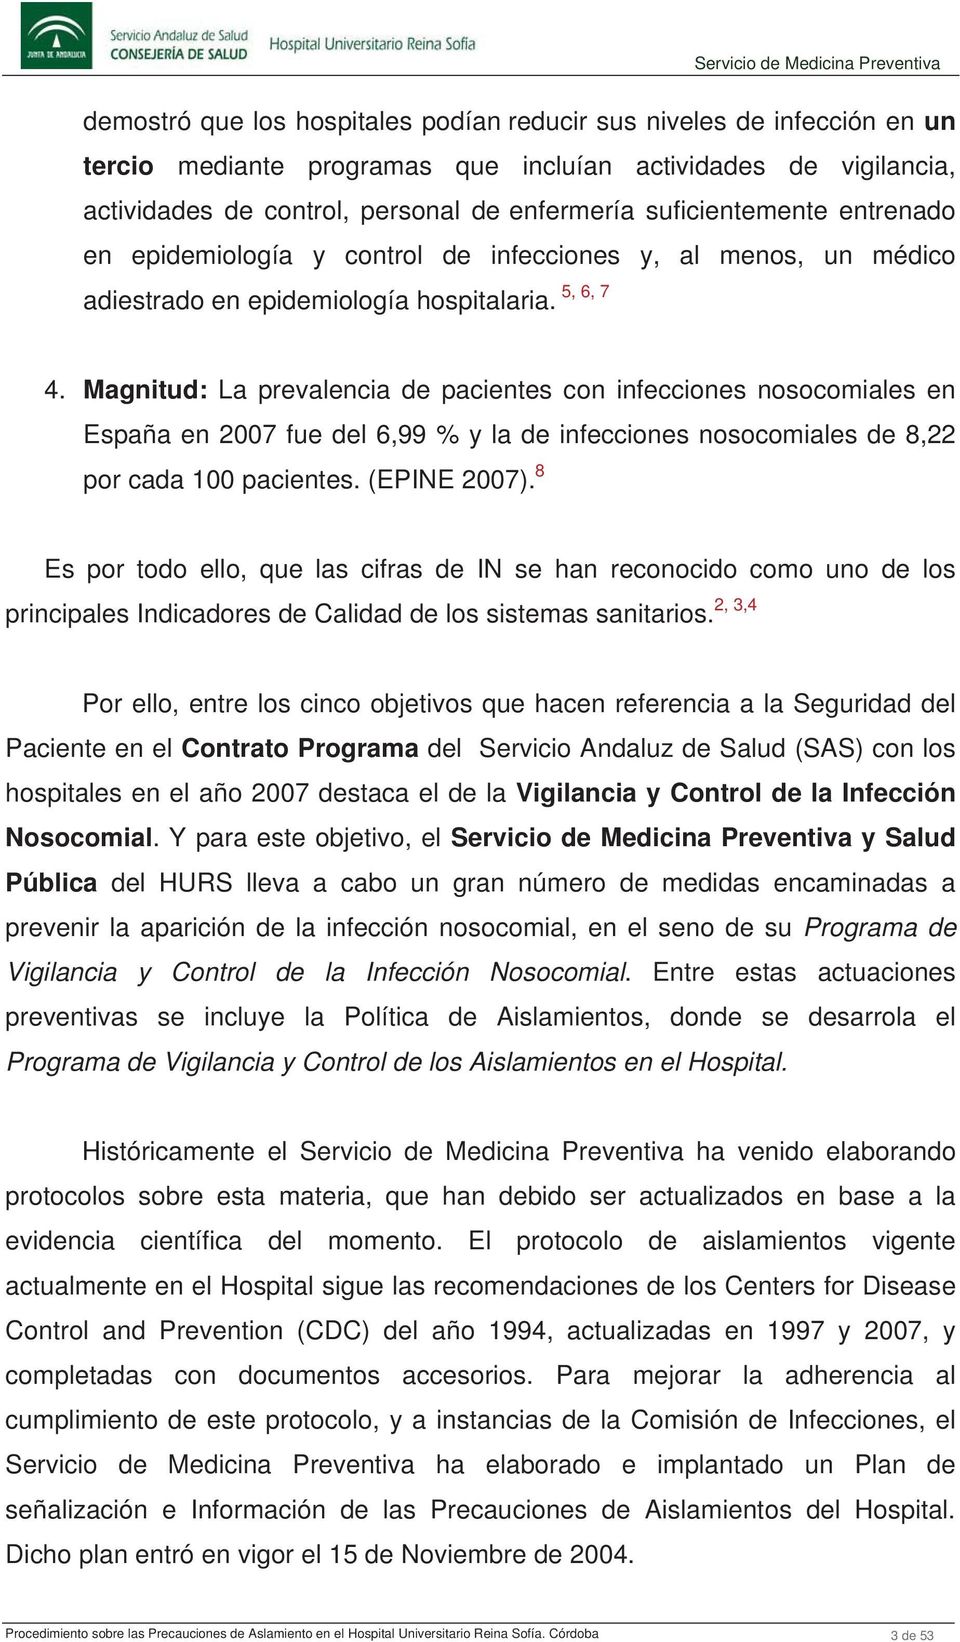 Magnitud: La prevalencia de pacientes con infecciones nosocomiales en España en 2007 fue del 6,99 % y la de infecciones nosocomiales de 8,22 por cada 100 pacientes. (EPINE 2007).